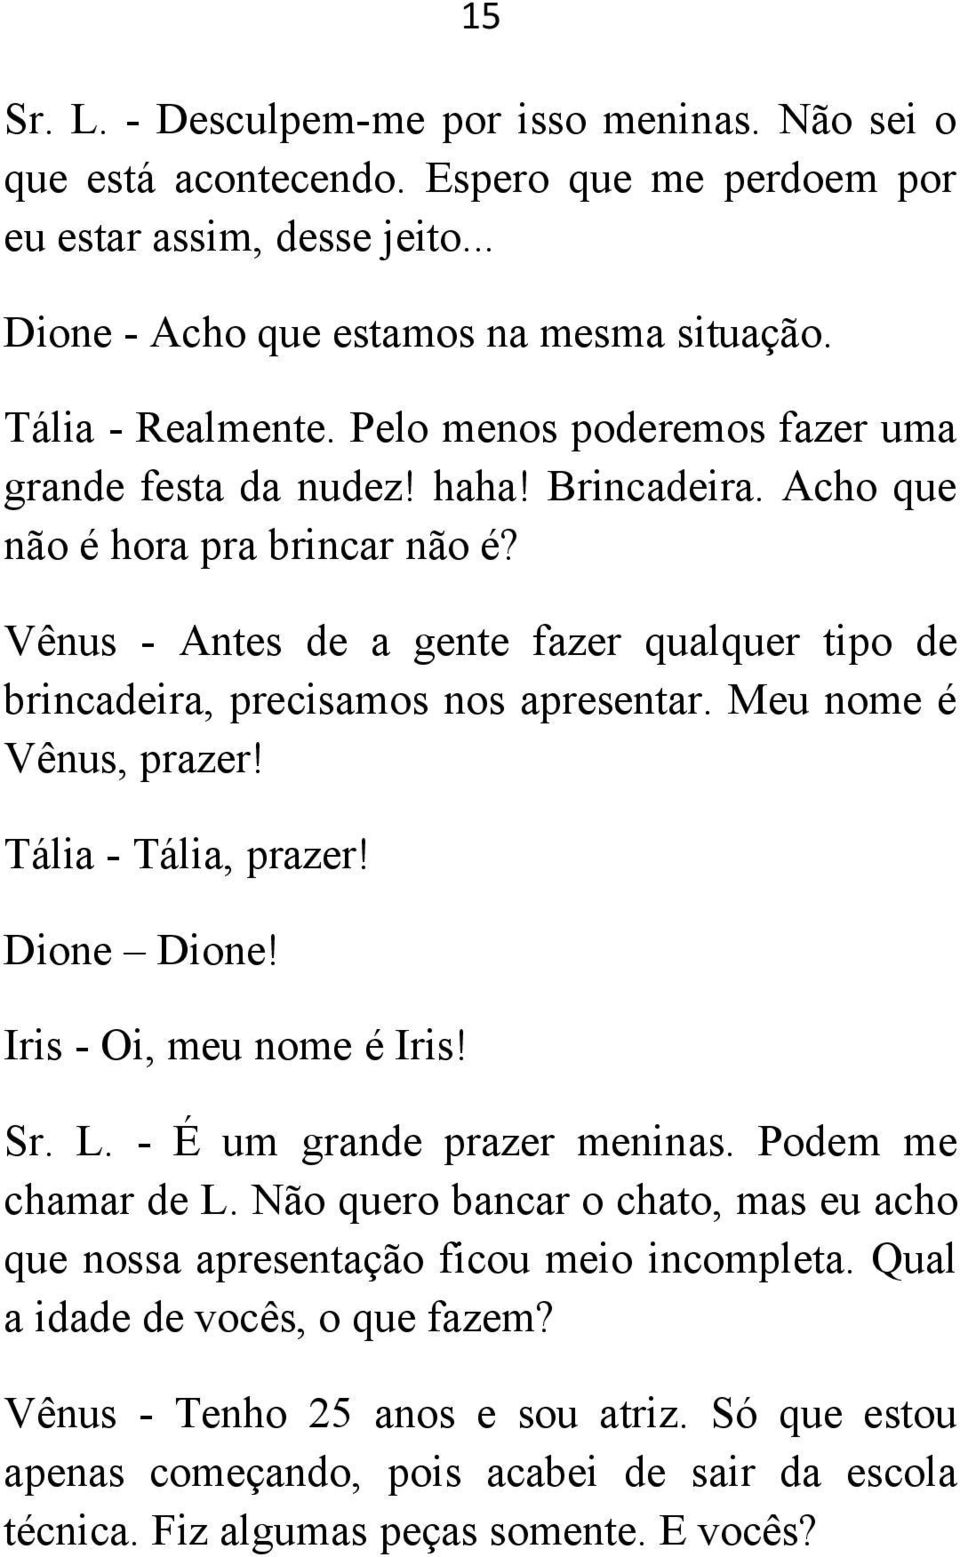 Meu nome é Vênus, prazer! Tália - Tália, prazer! Dione Dione! Iris - Oi, meu nome é Iris! Sr. L. - É um grande prazer meninas. Podem me chamar de L.